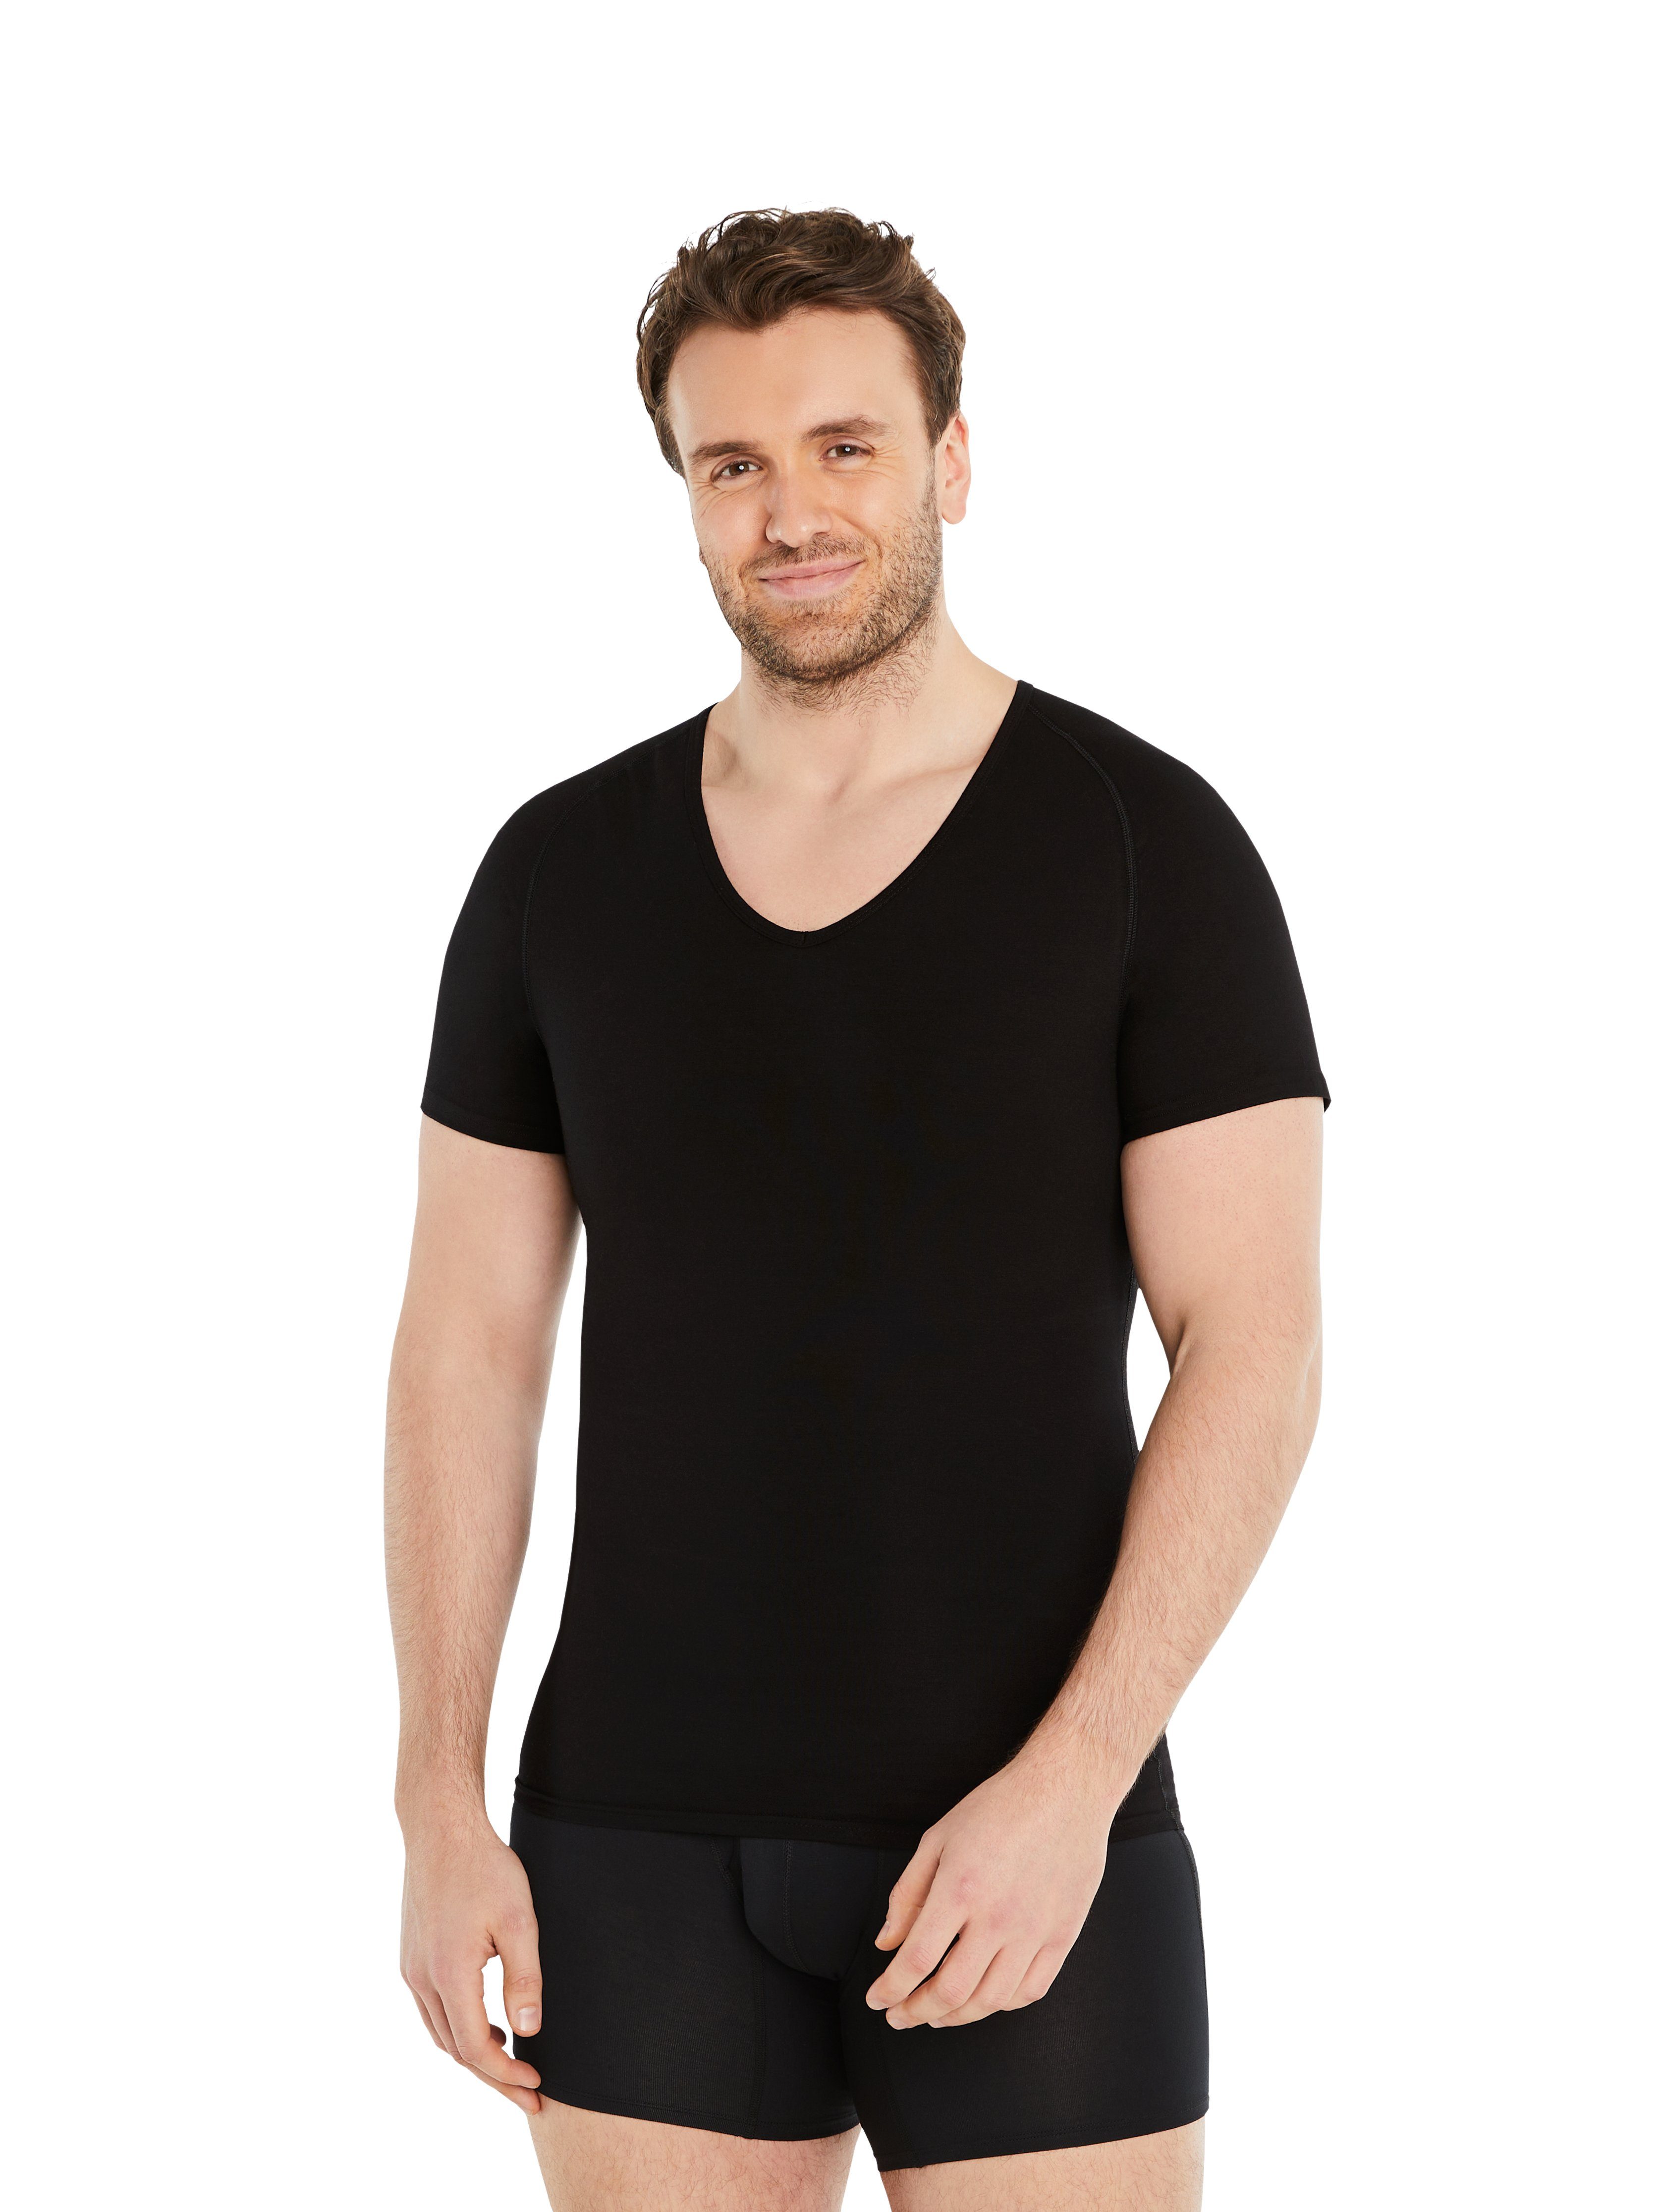 FINN Design Shapinghemd Shapewear Kompressions-Unterhemd Kurzarm Herren extra starke Kompression, eine Kleidergröße weniger Schwarz